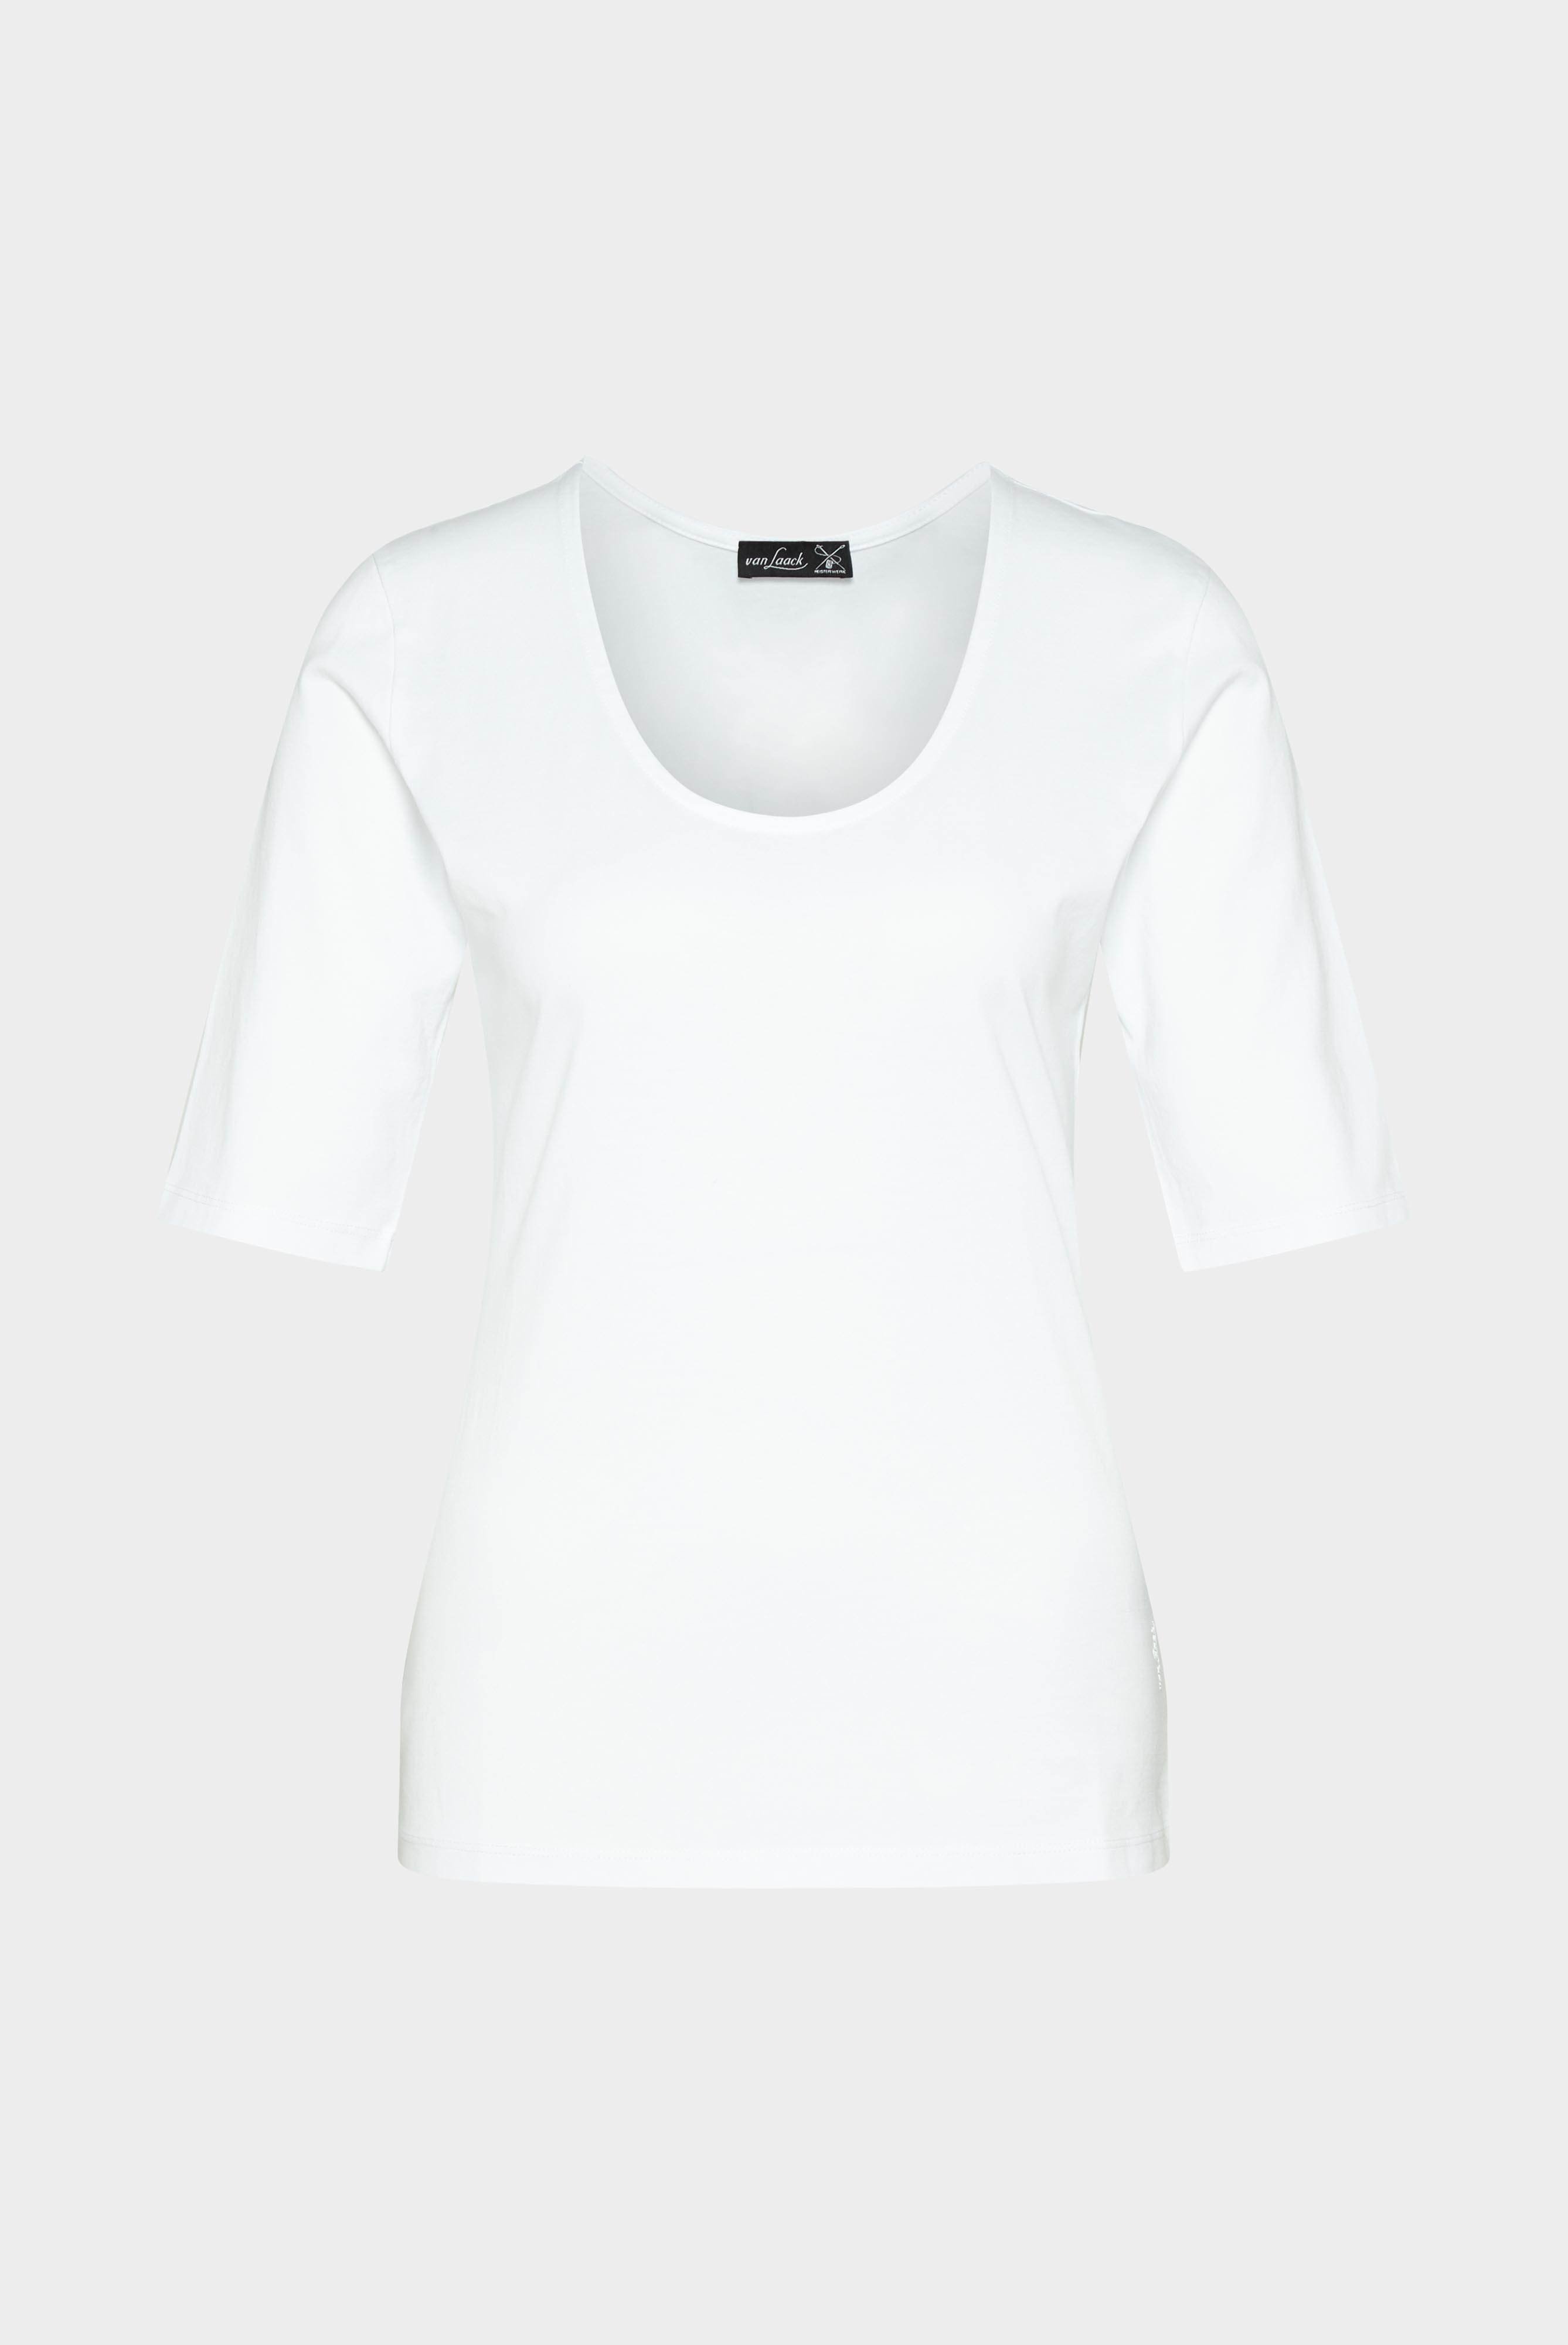 Tops & T-Shirts+Urban Jersey Wide Neck T-Shirt+05.2911..Z20044.000.XL